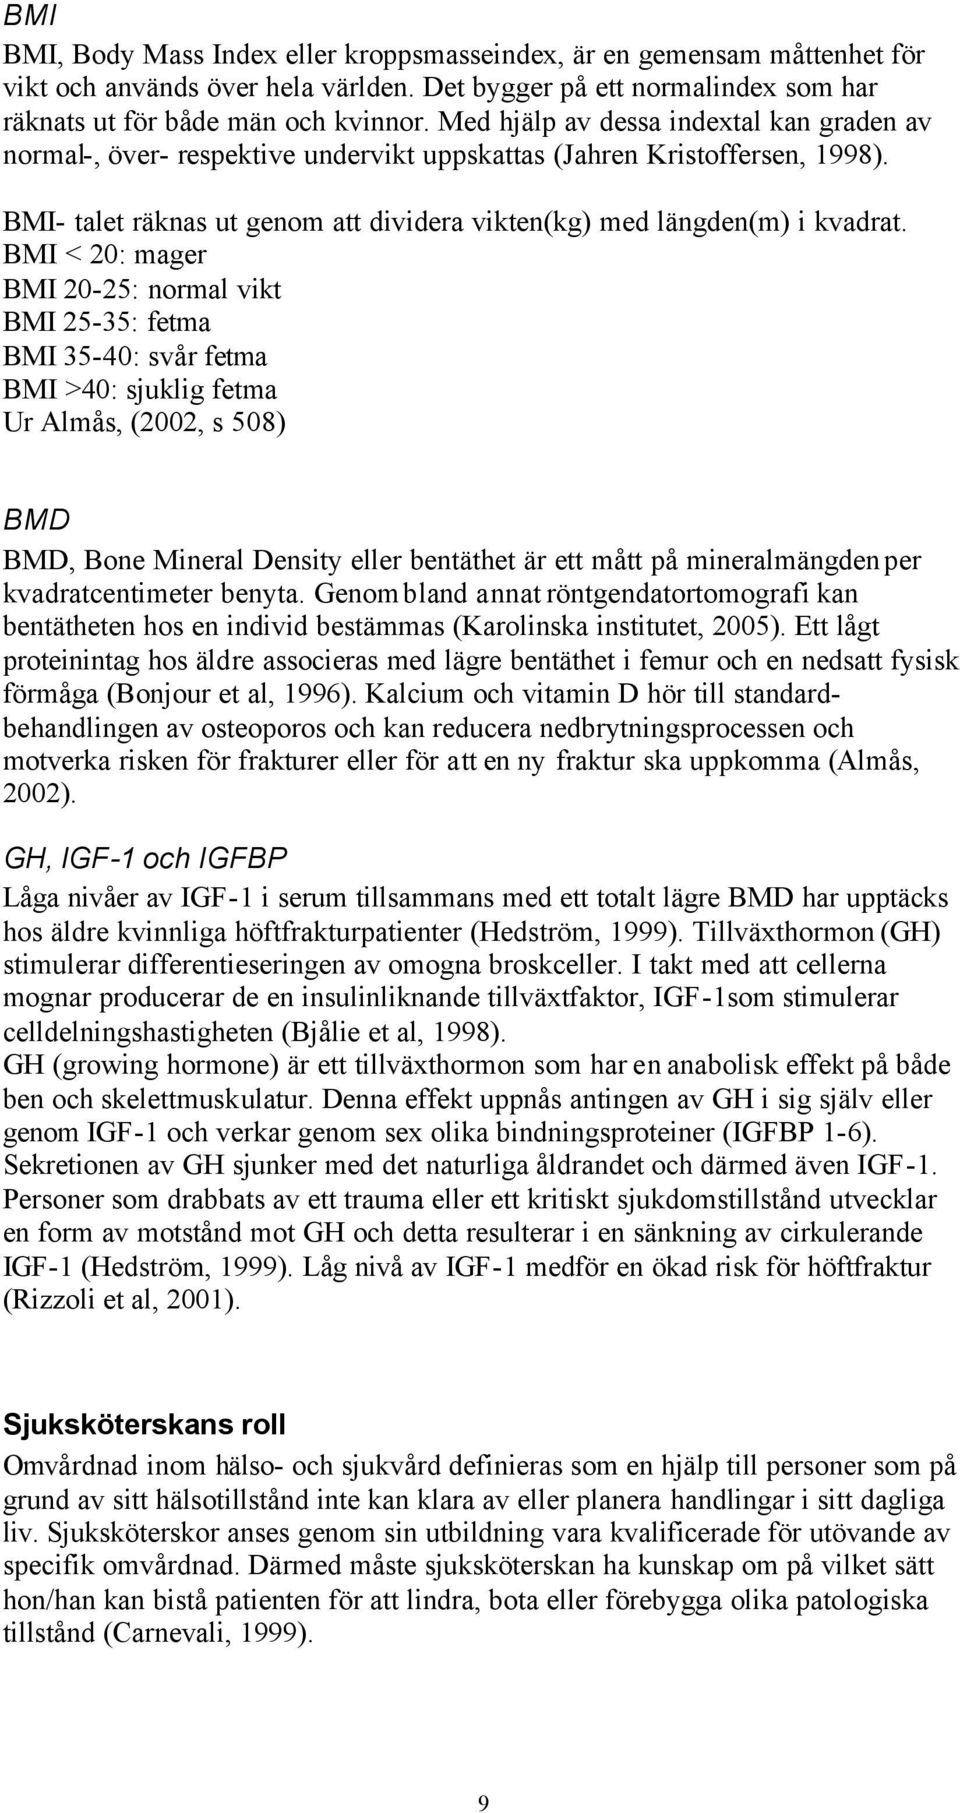 BMI < 20: mager BMI 20-25: normal vikt BMI 25-35: fetma BMI 35-40: svår fetma BMI >40: sjuklig fetma Ur Almås, (2002, s 508) BMD BMD, Bone Mineral Density eller bentäthet är ett mått på